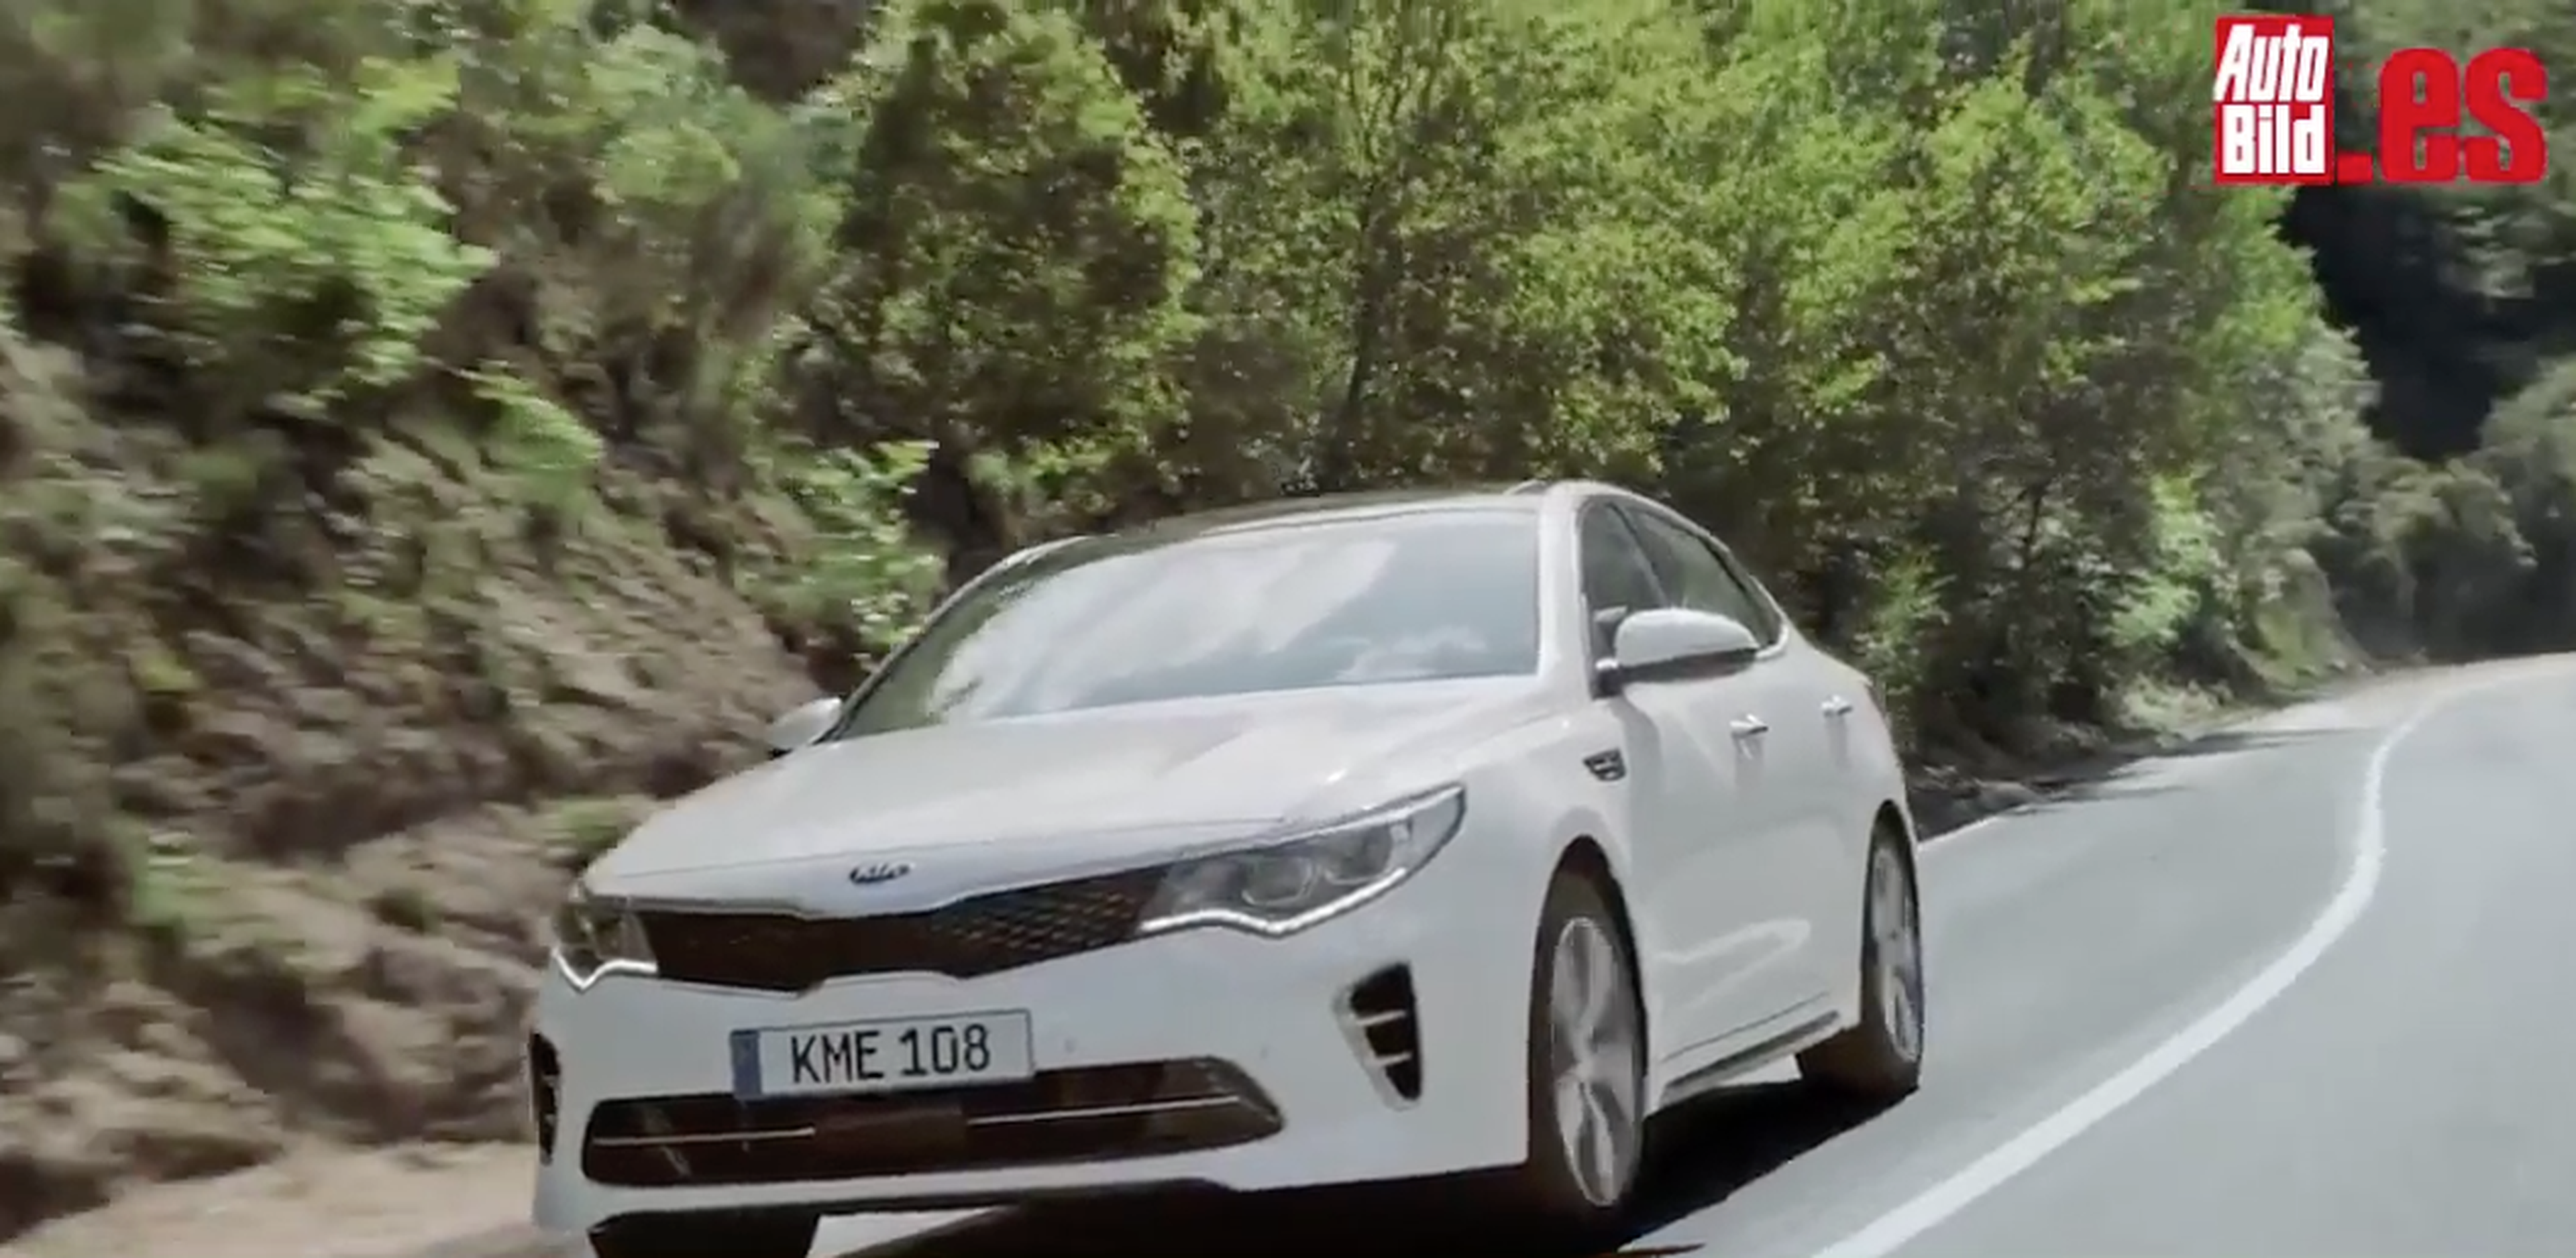 VÍDEO: Kia Optima GT en movimiento, mira sus detalles